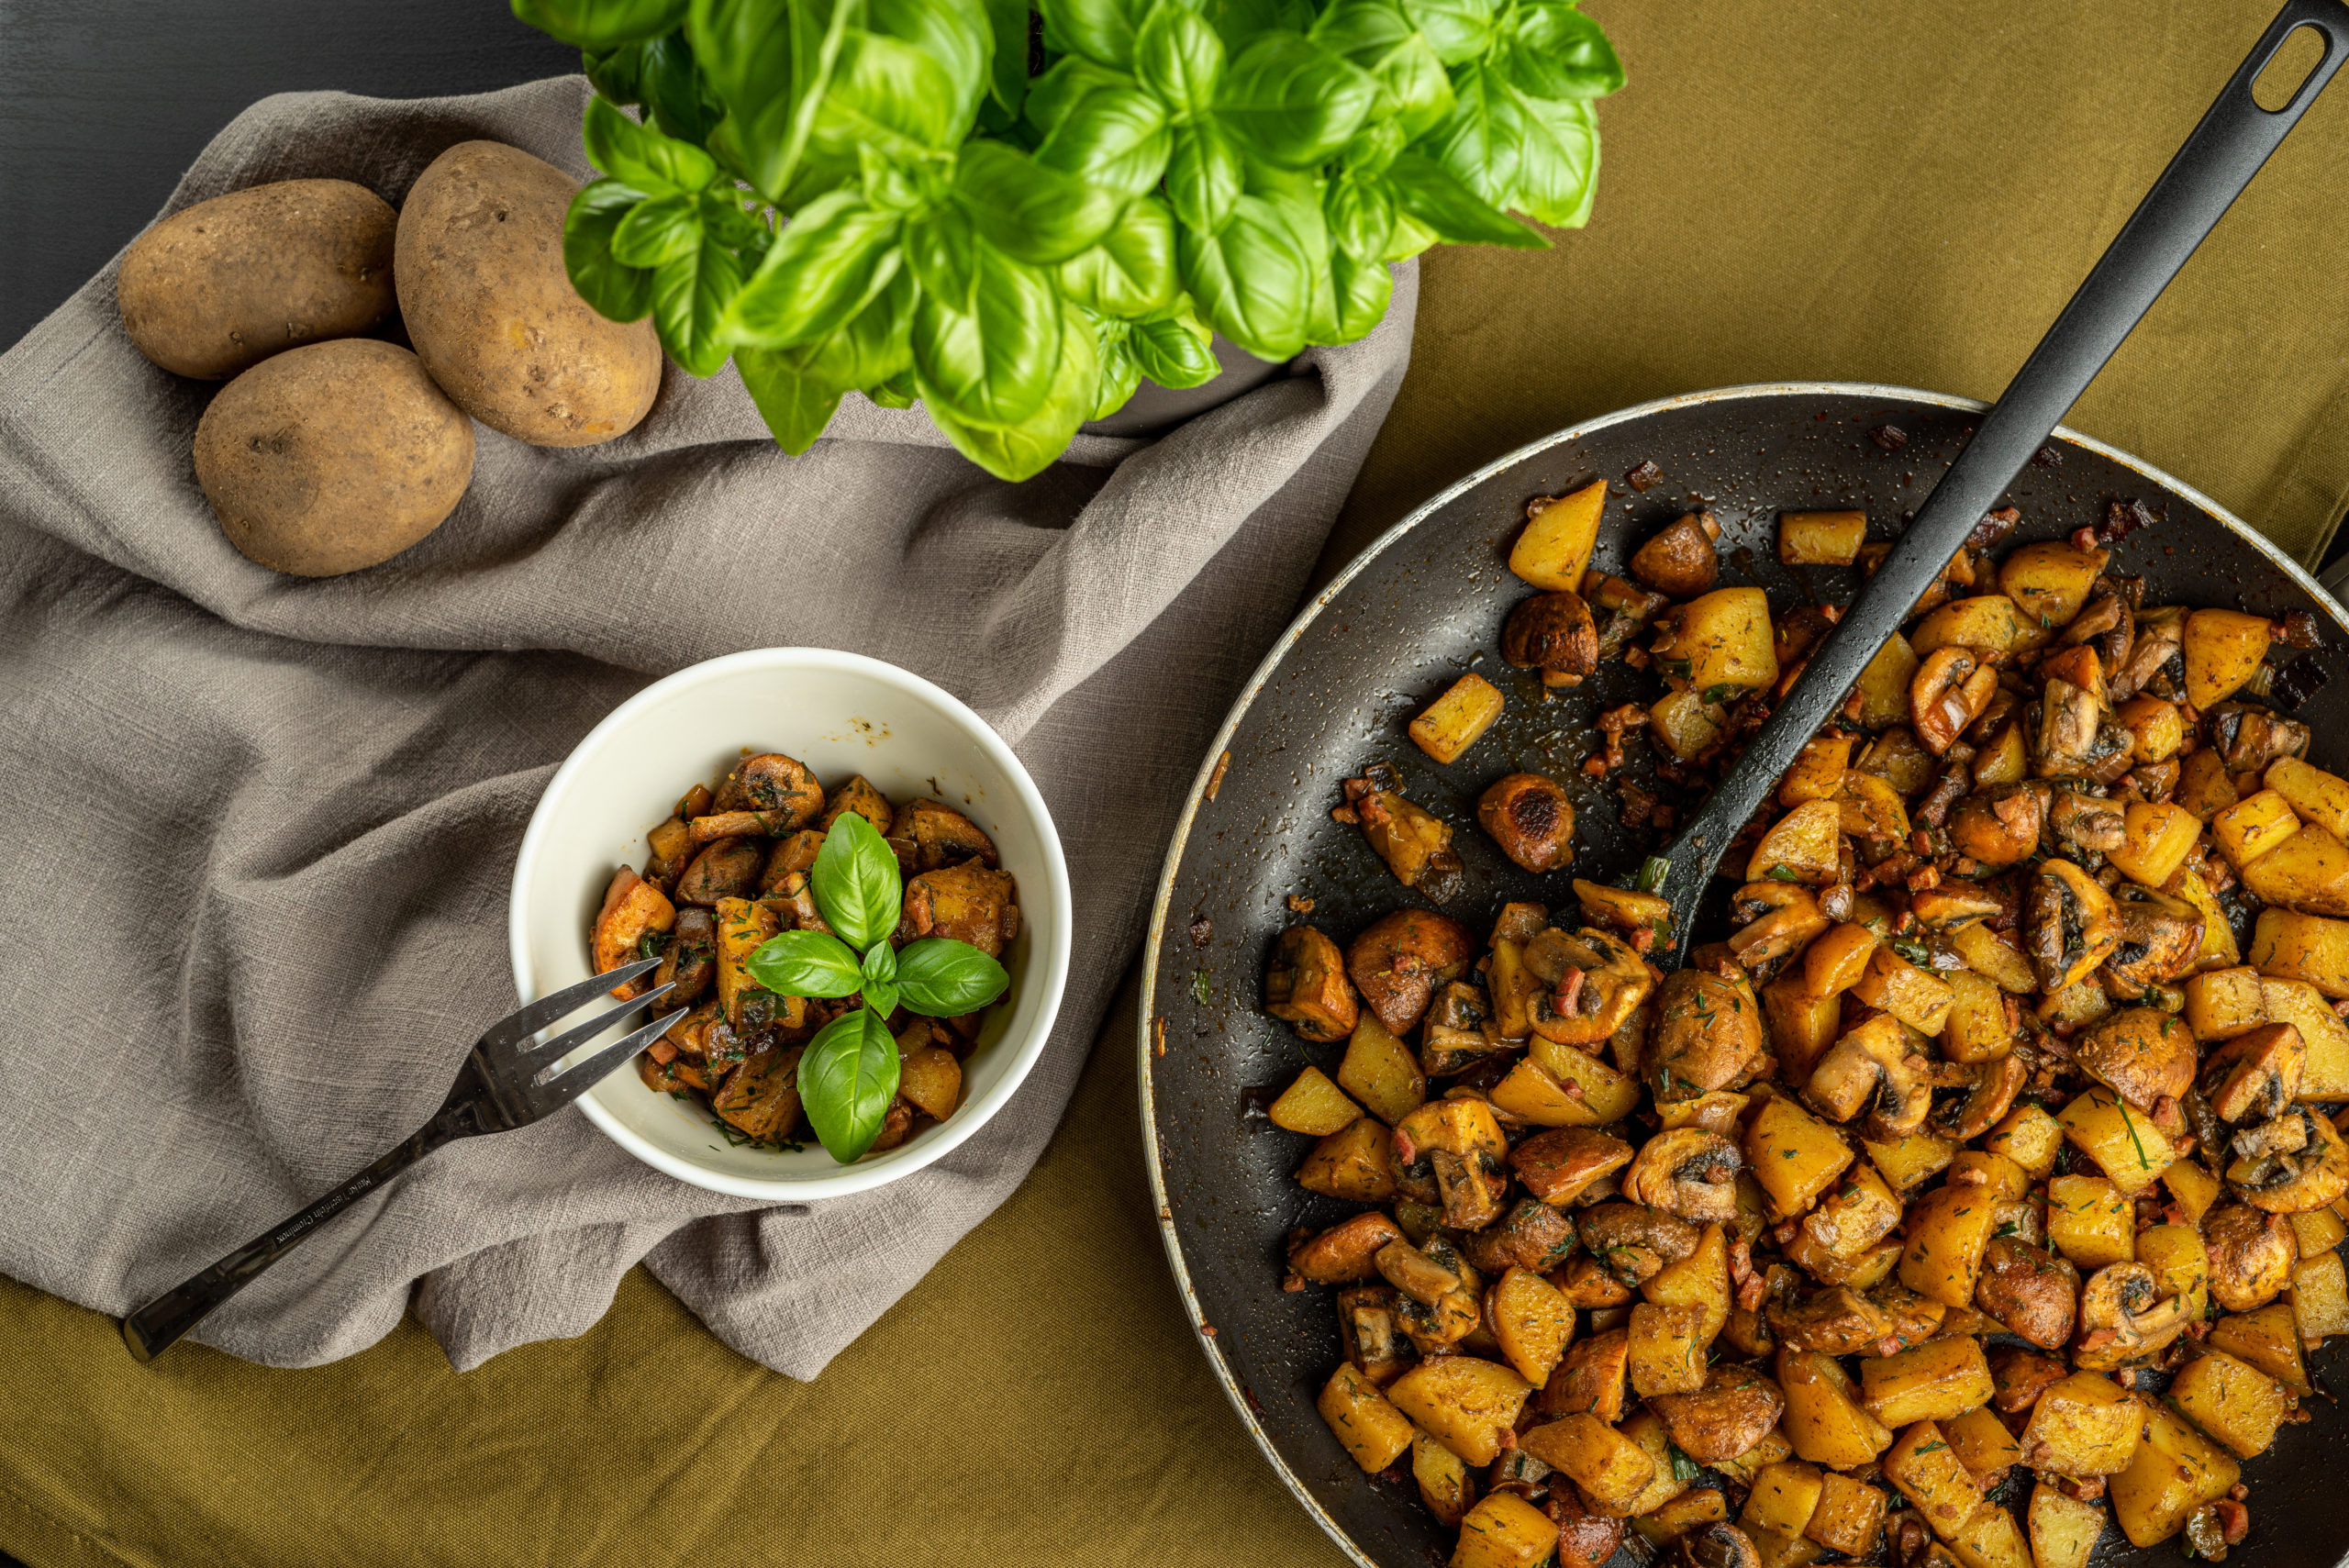 Kartoffel-Pilz Pfanne - Einfach, schnell und super lecker! - Evis Food Blog